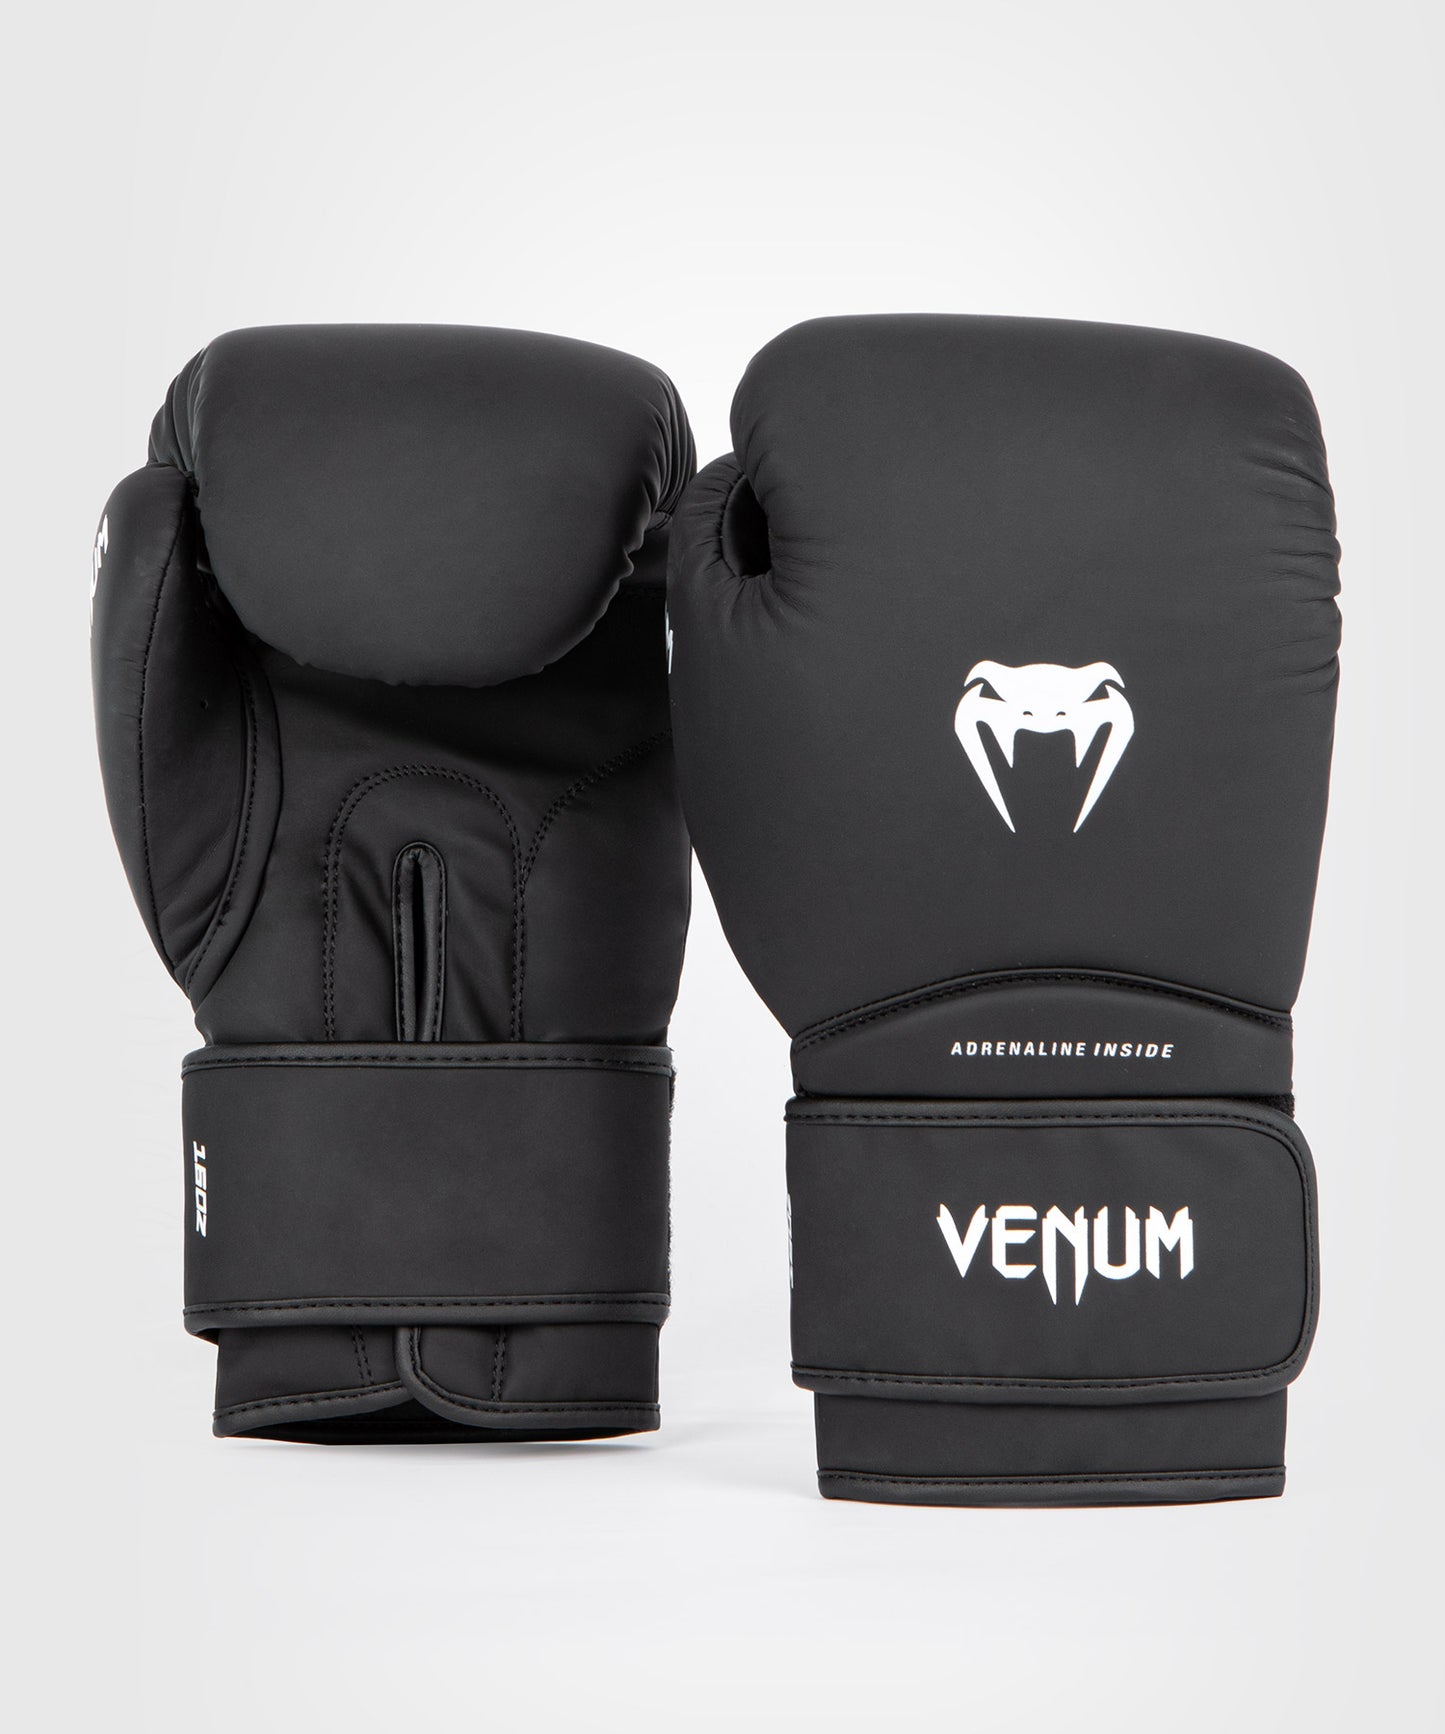 Venum Contender 1.5 Boxing Gloves - Black/White